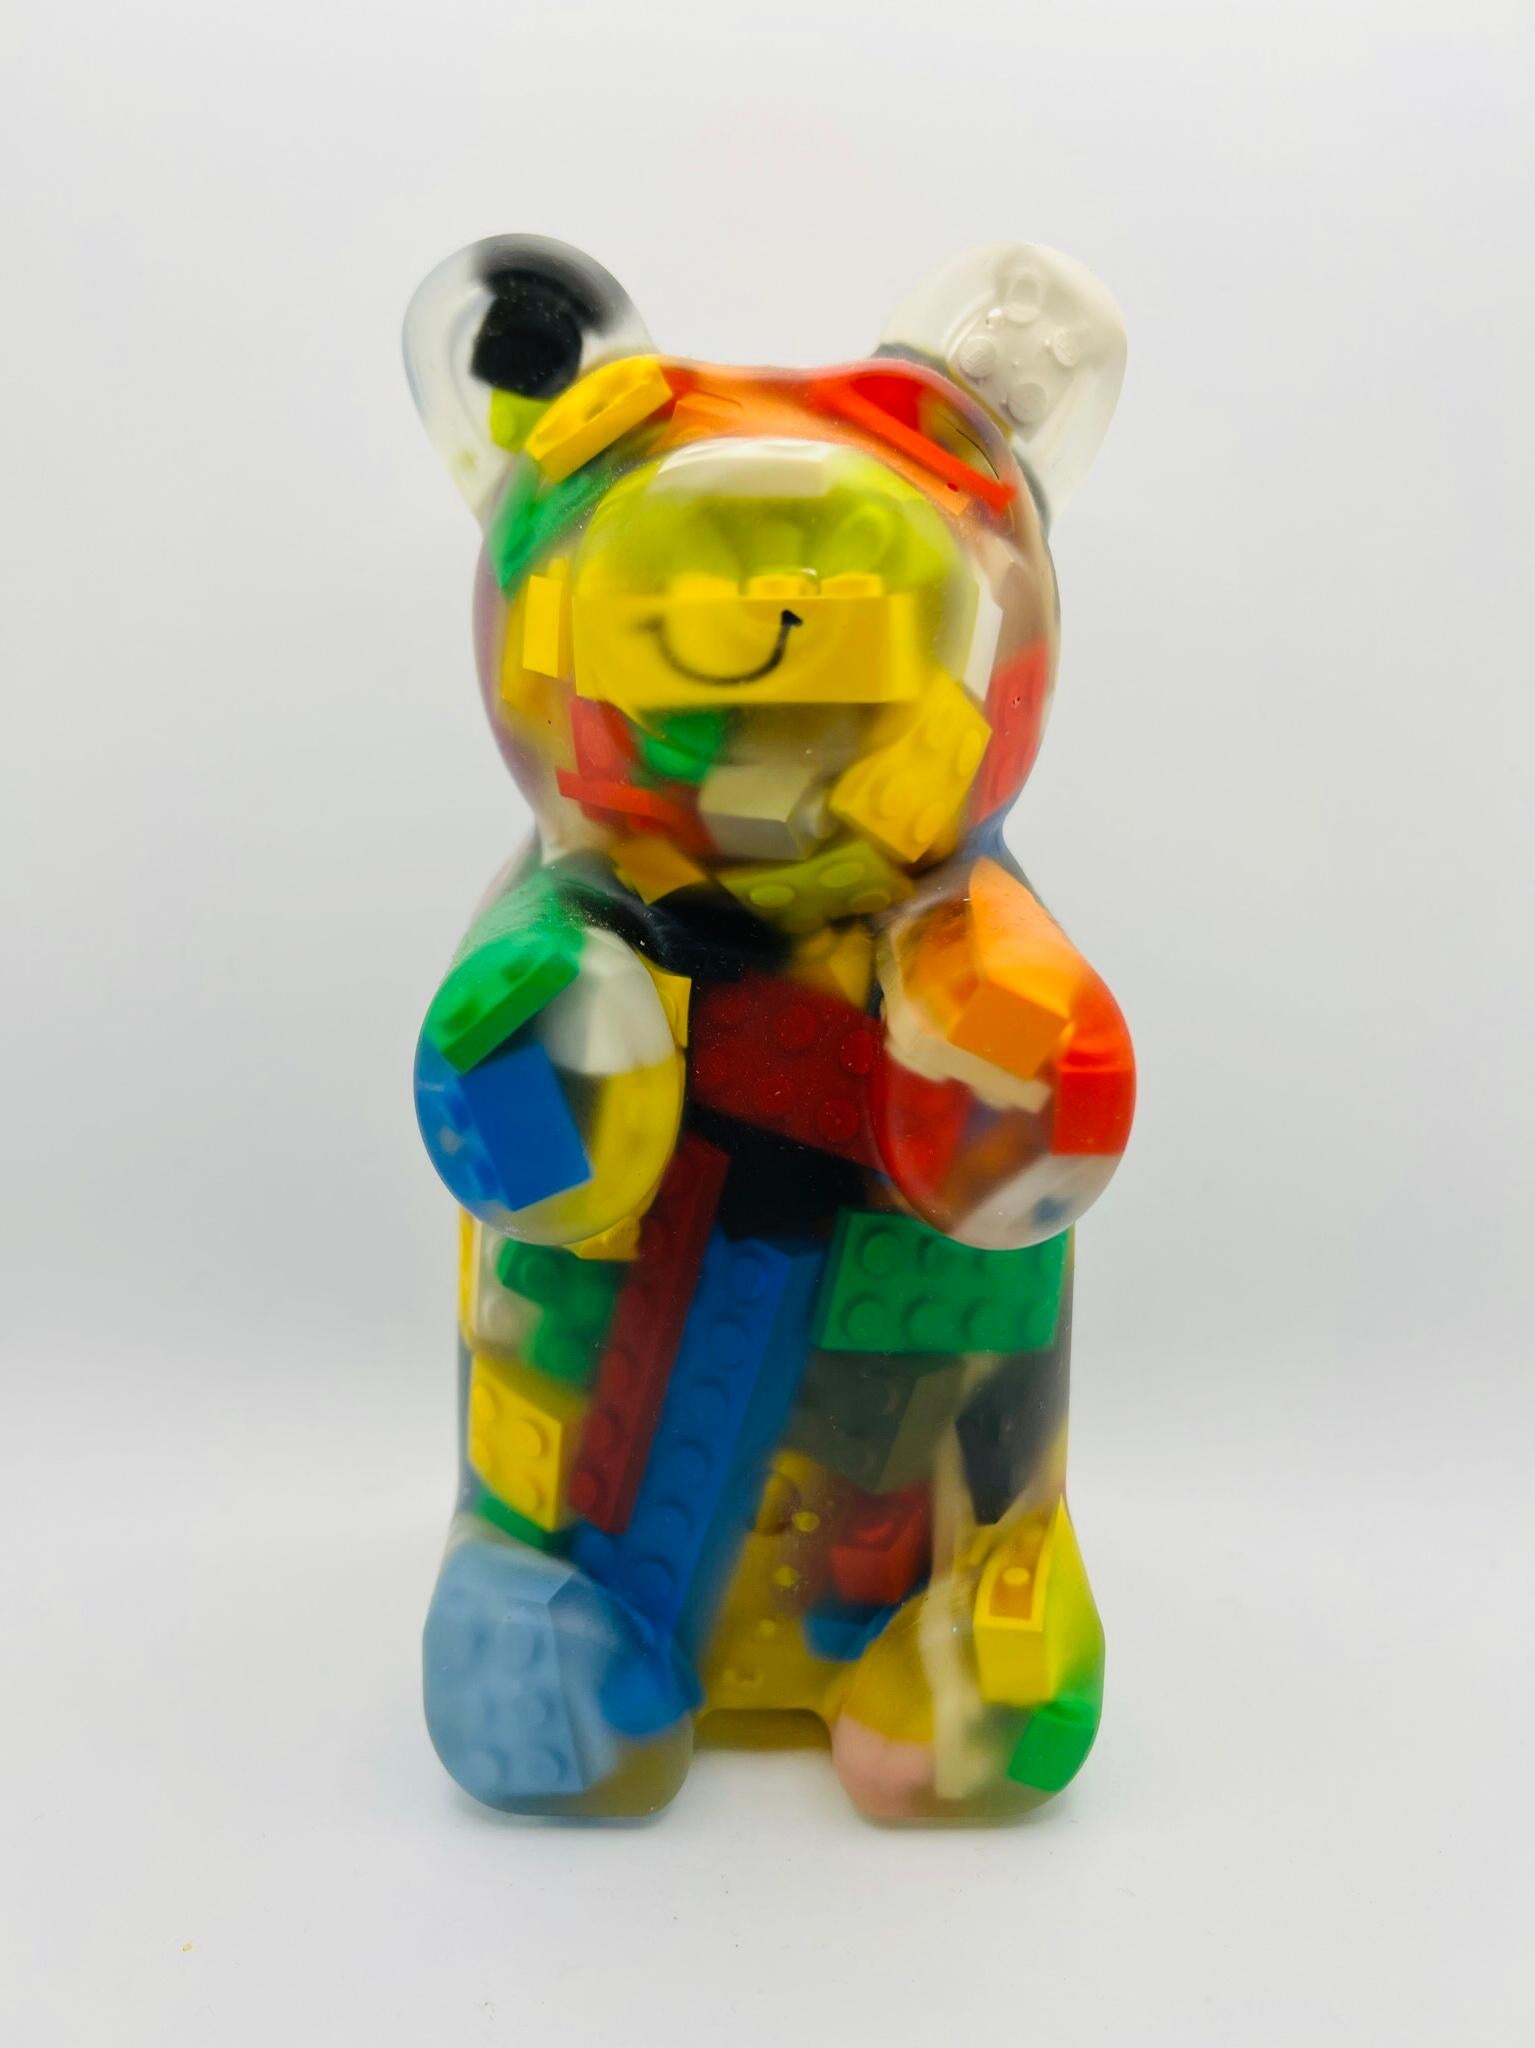 Lego Gummy Bear 1 - Mixed Media Art by Sahara Novotny